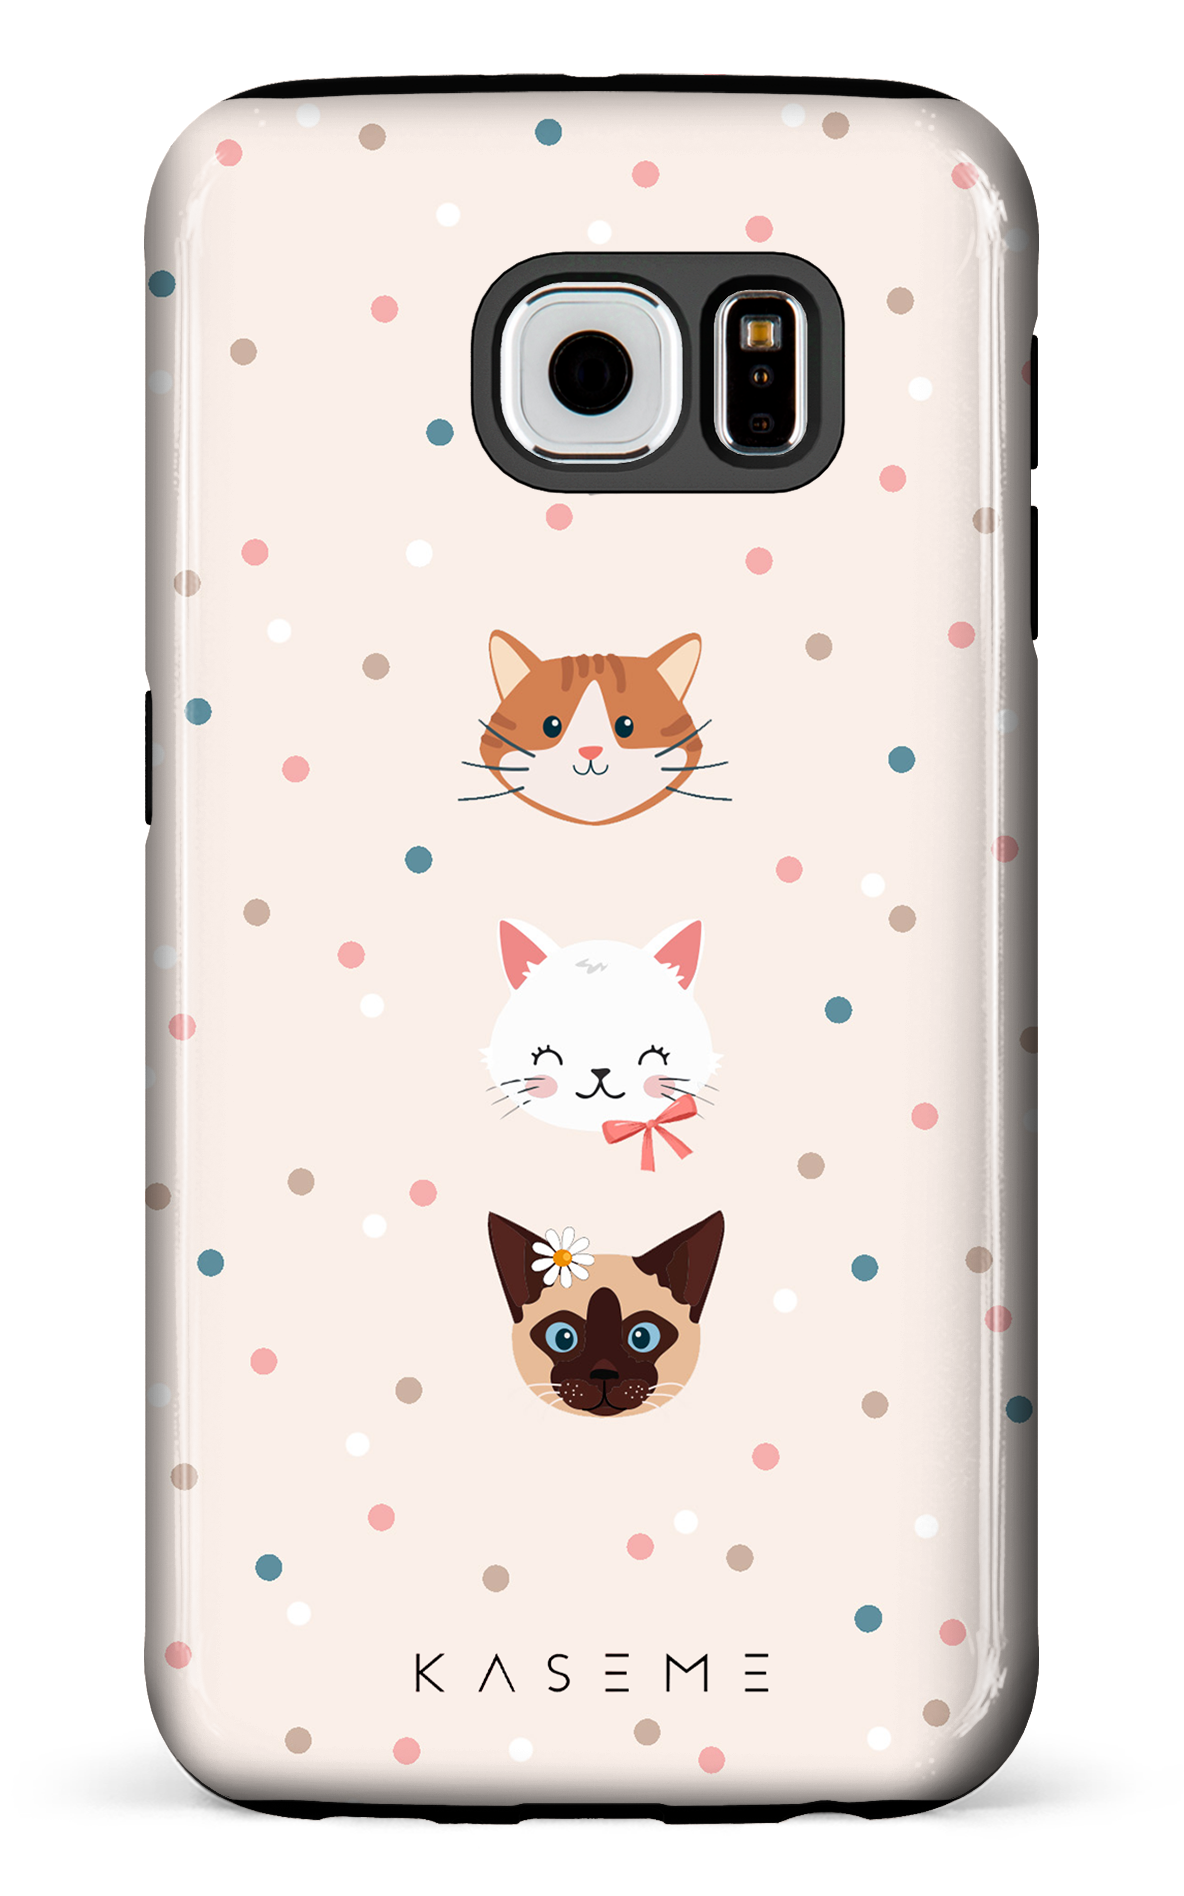 Cat lover by Marina Bastarache x SPCA - Galaxy S6